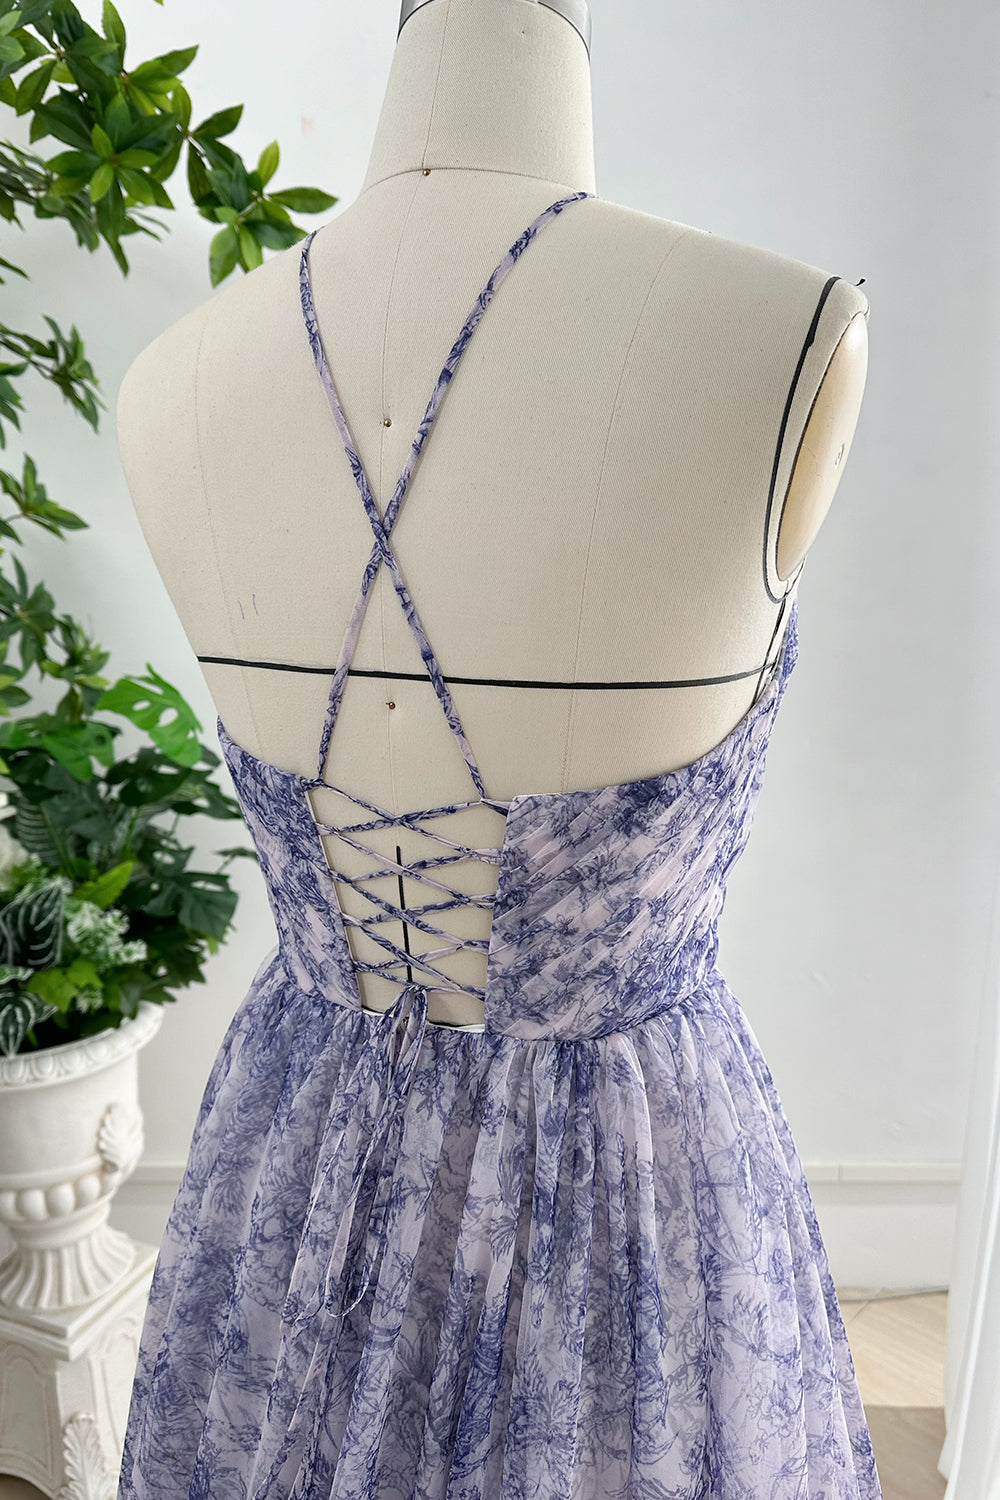 Halter Corset Blue White Print Tulle Dress with Handmade Flower